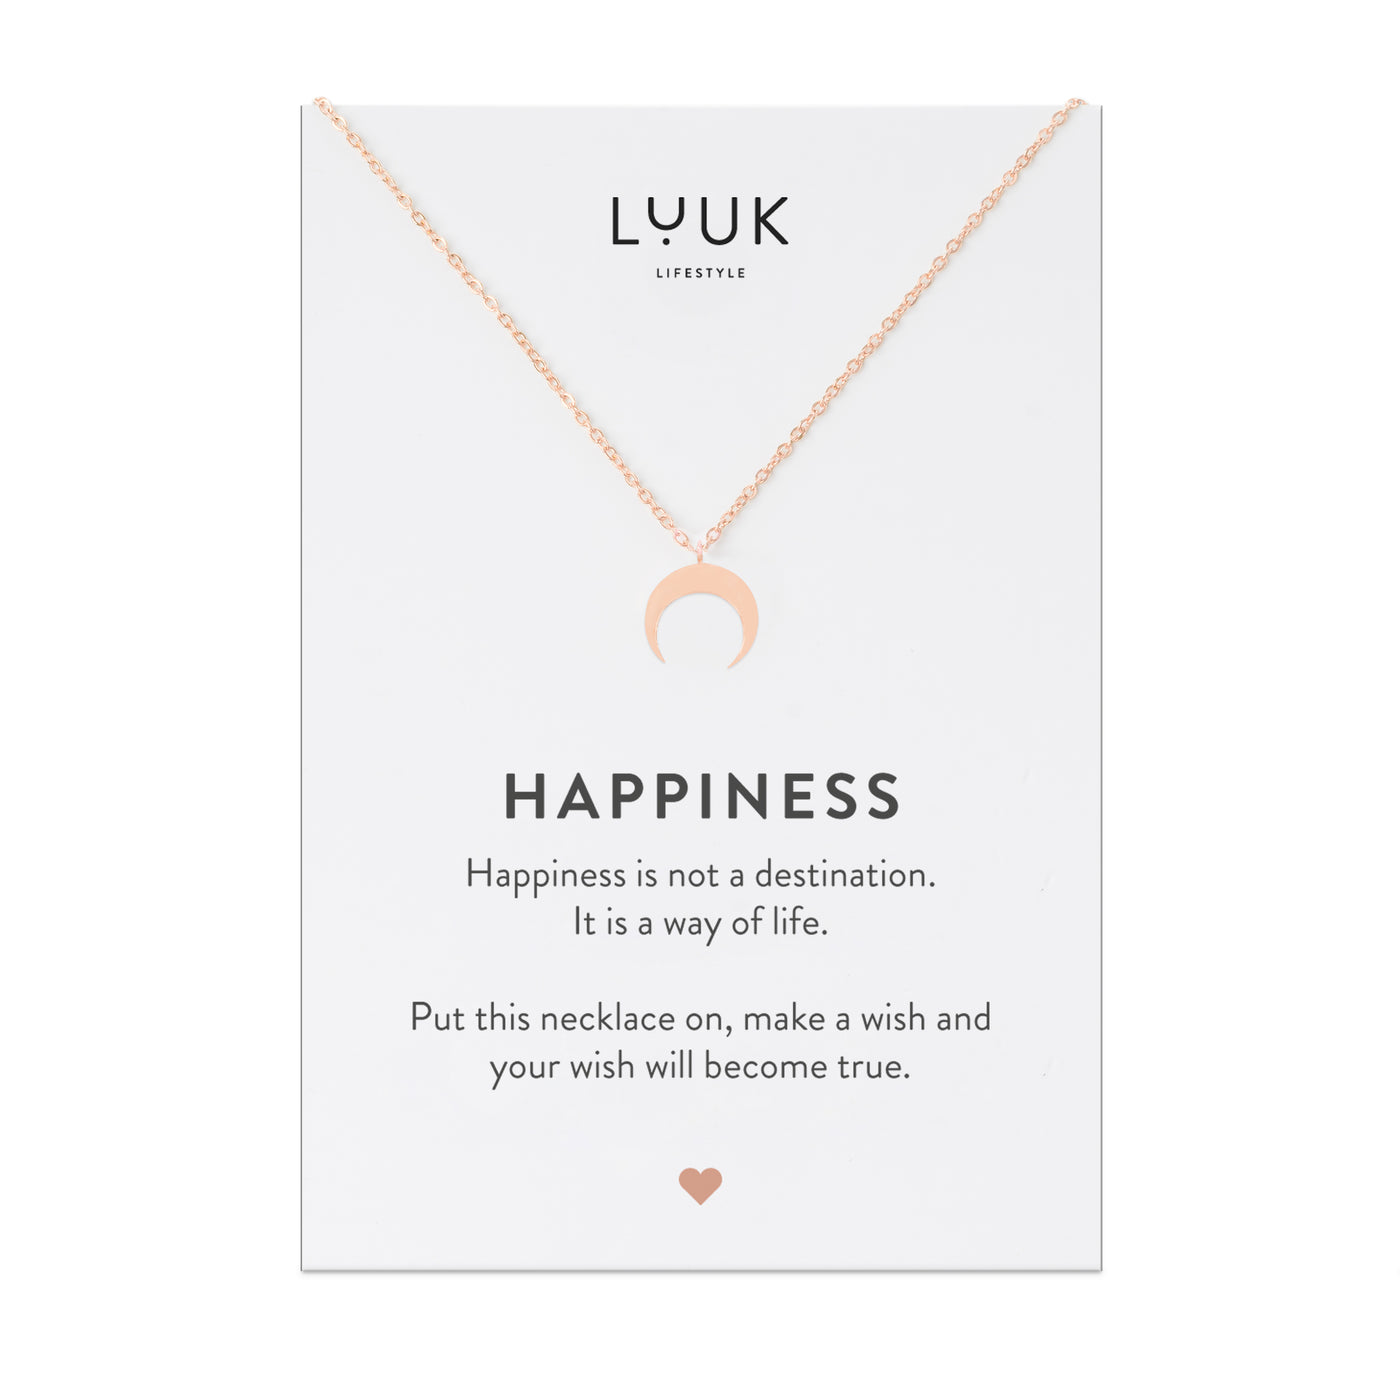 Rosegoldene Halskette mit Mond Anhänger auf Happiness Spruchkarte von Luuk Lifestyle